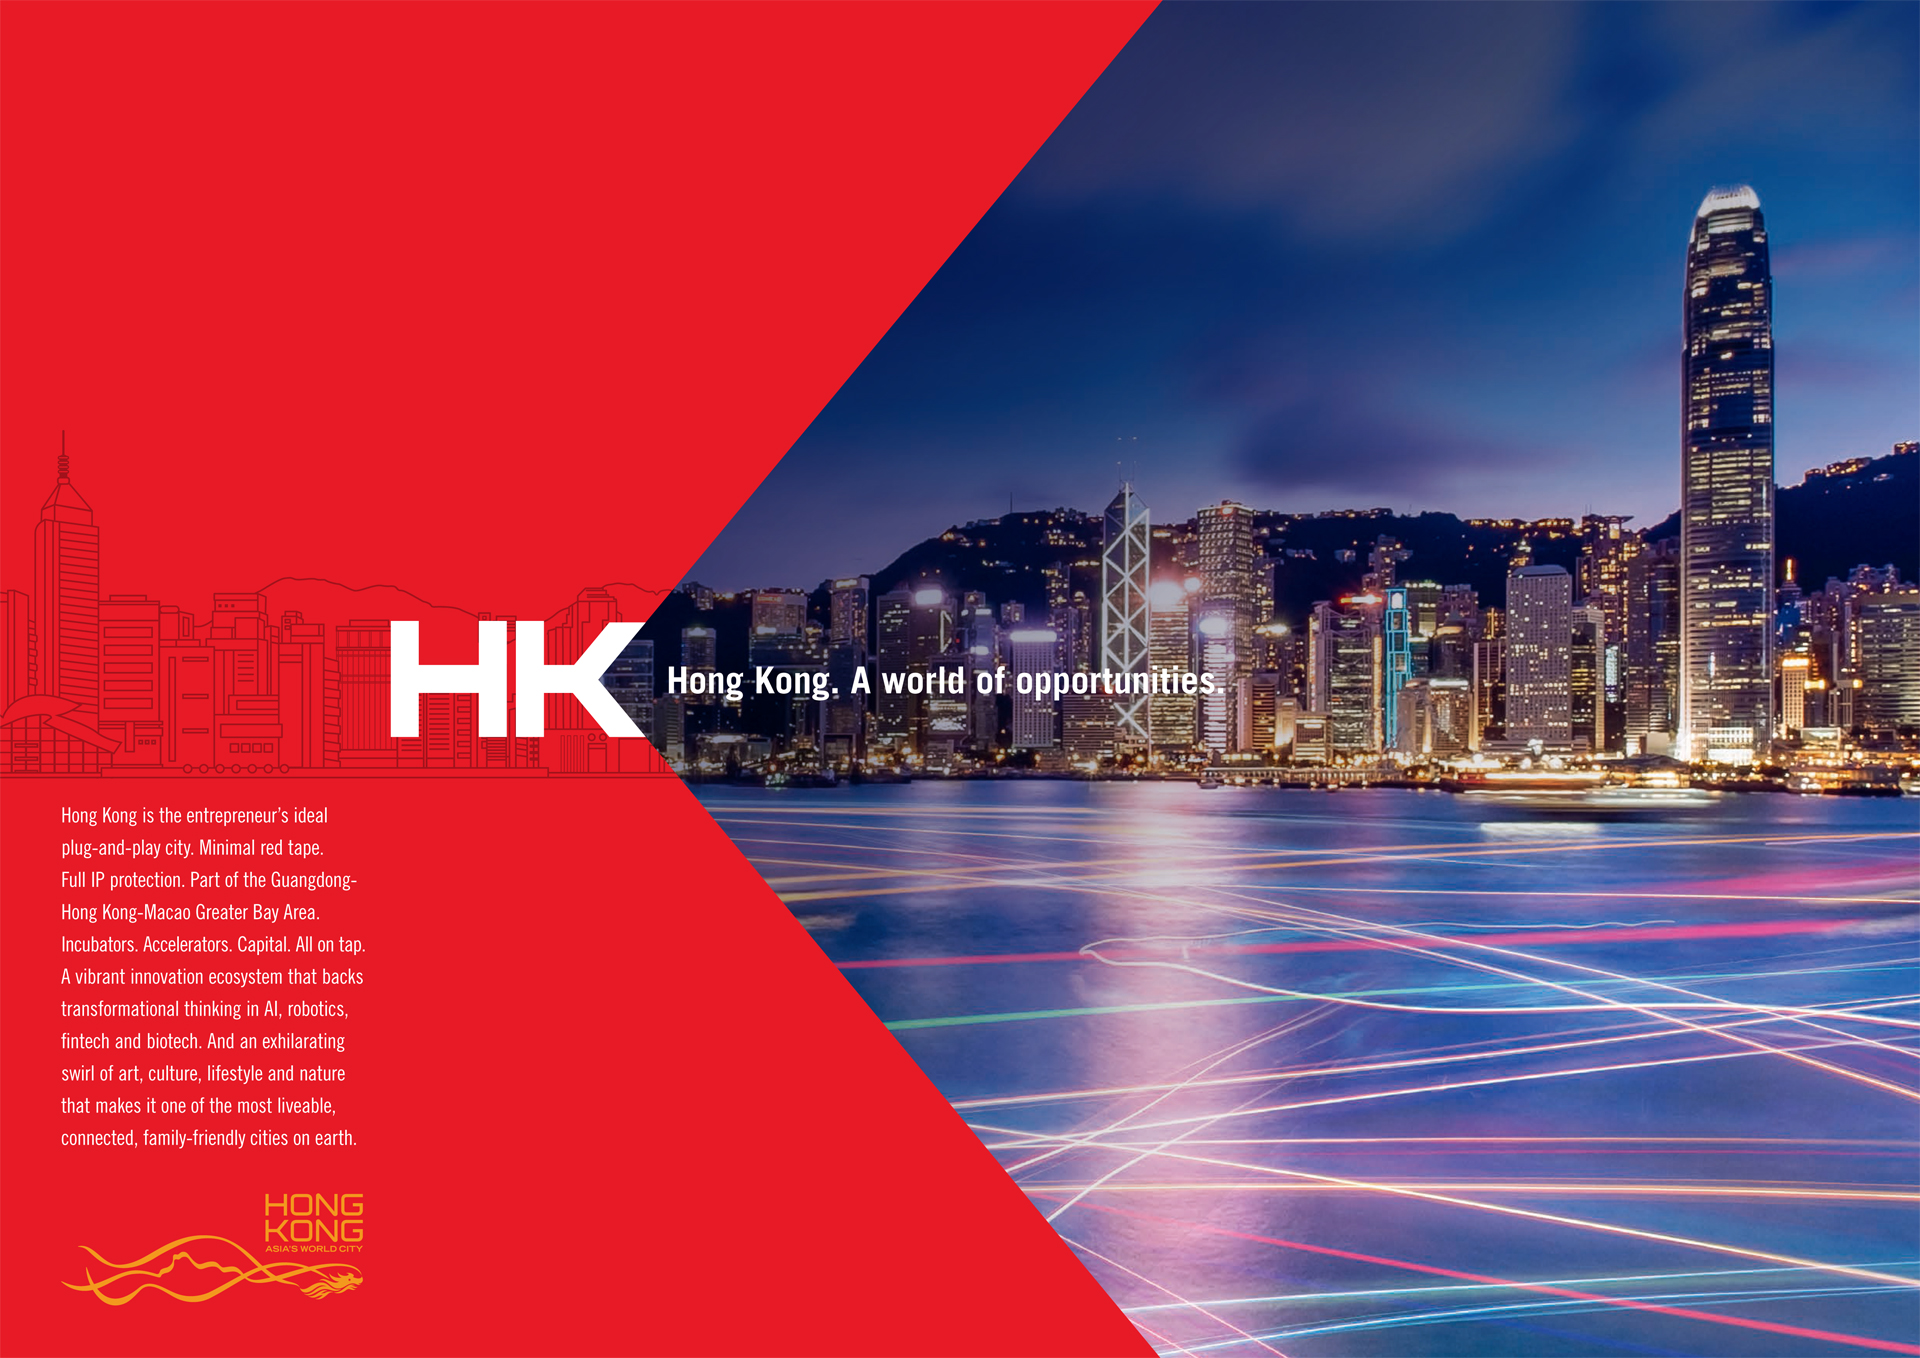 Hong Kong - A world of opportunities